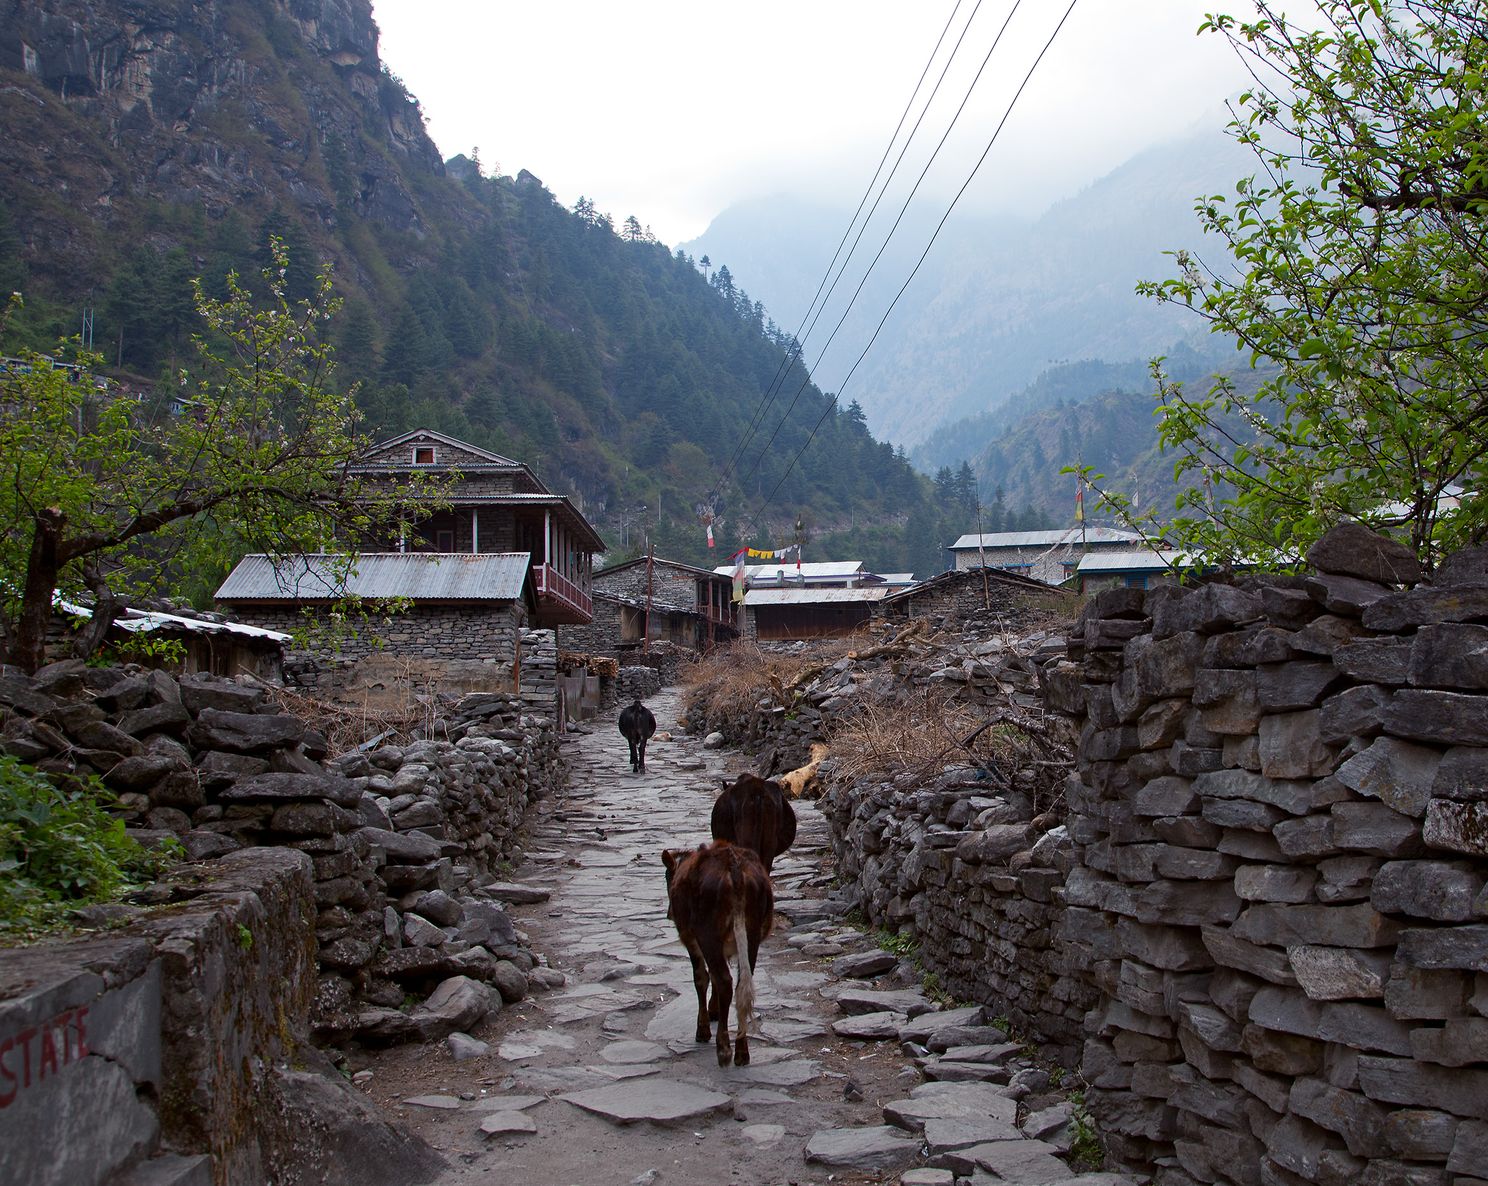 Chamje – Dharapani (1,920m.) 4-5 hours walk